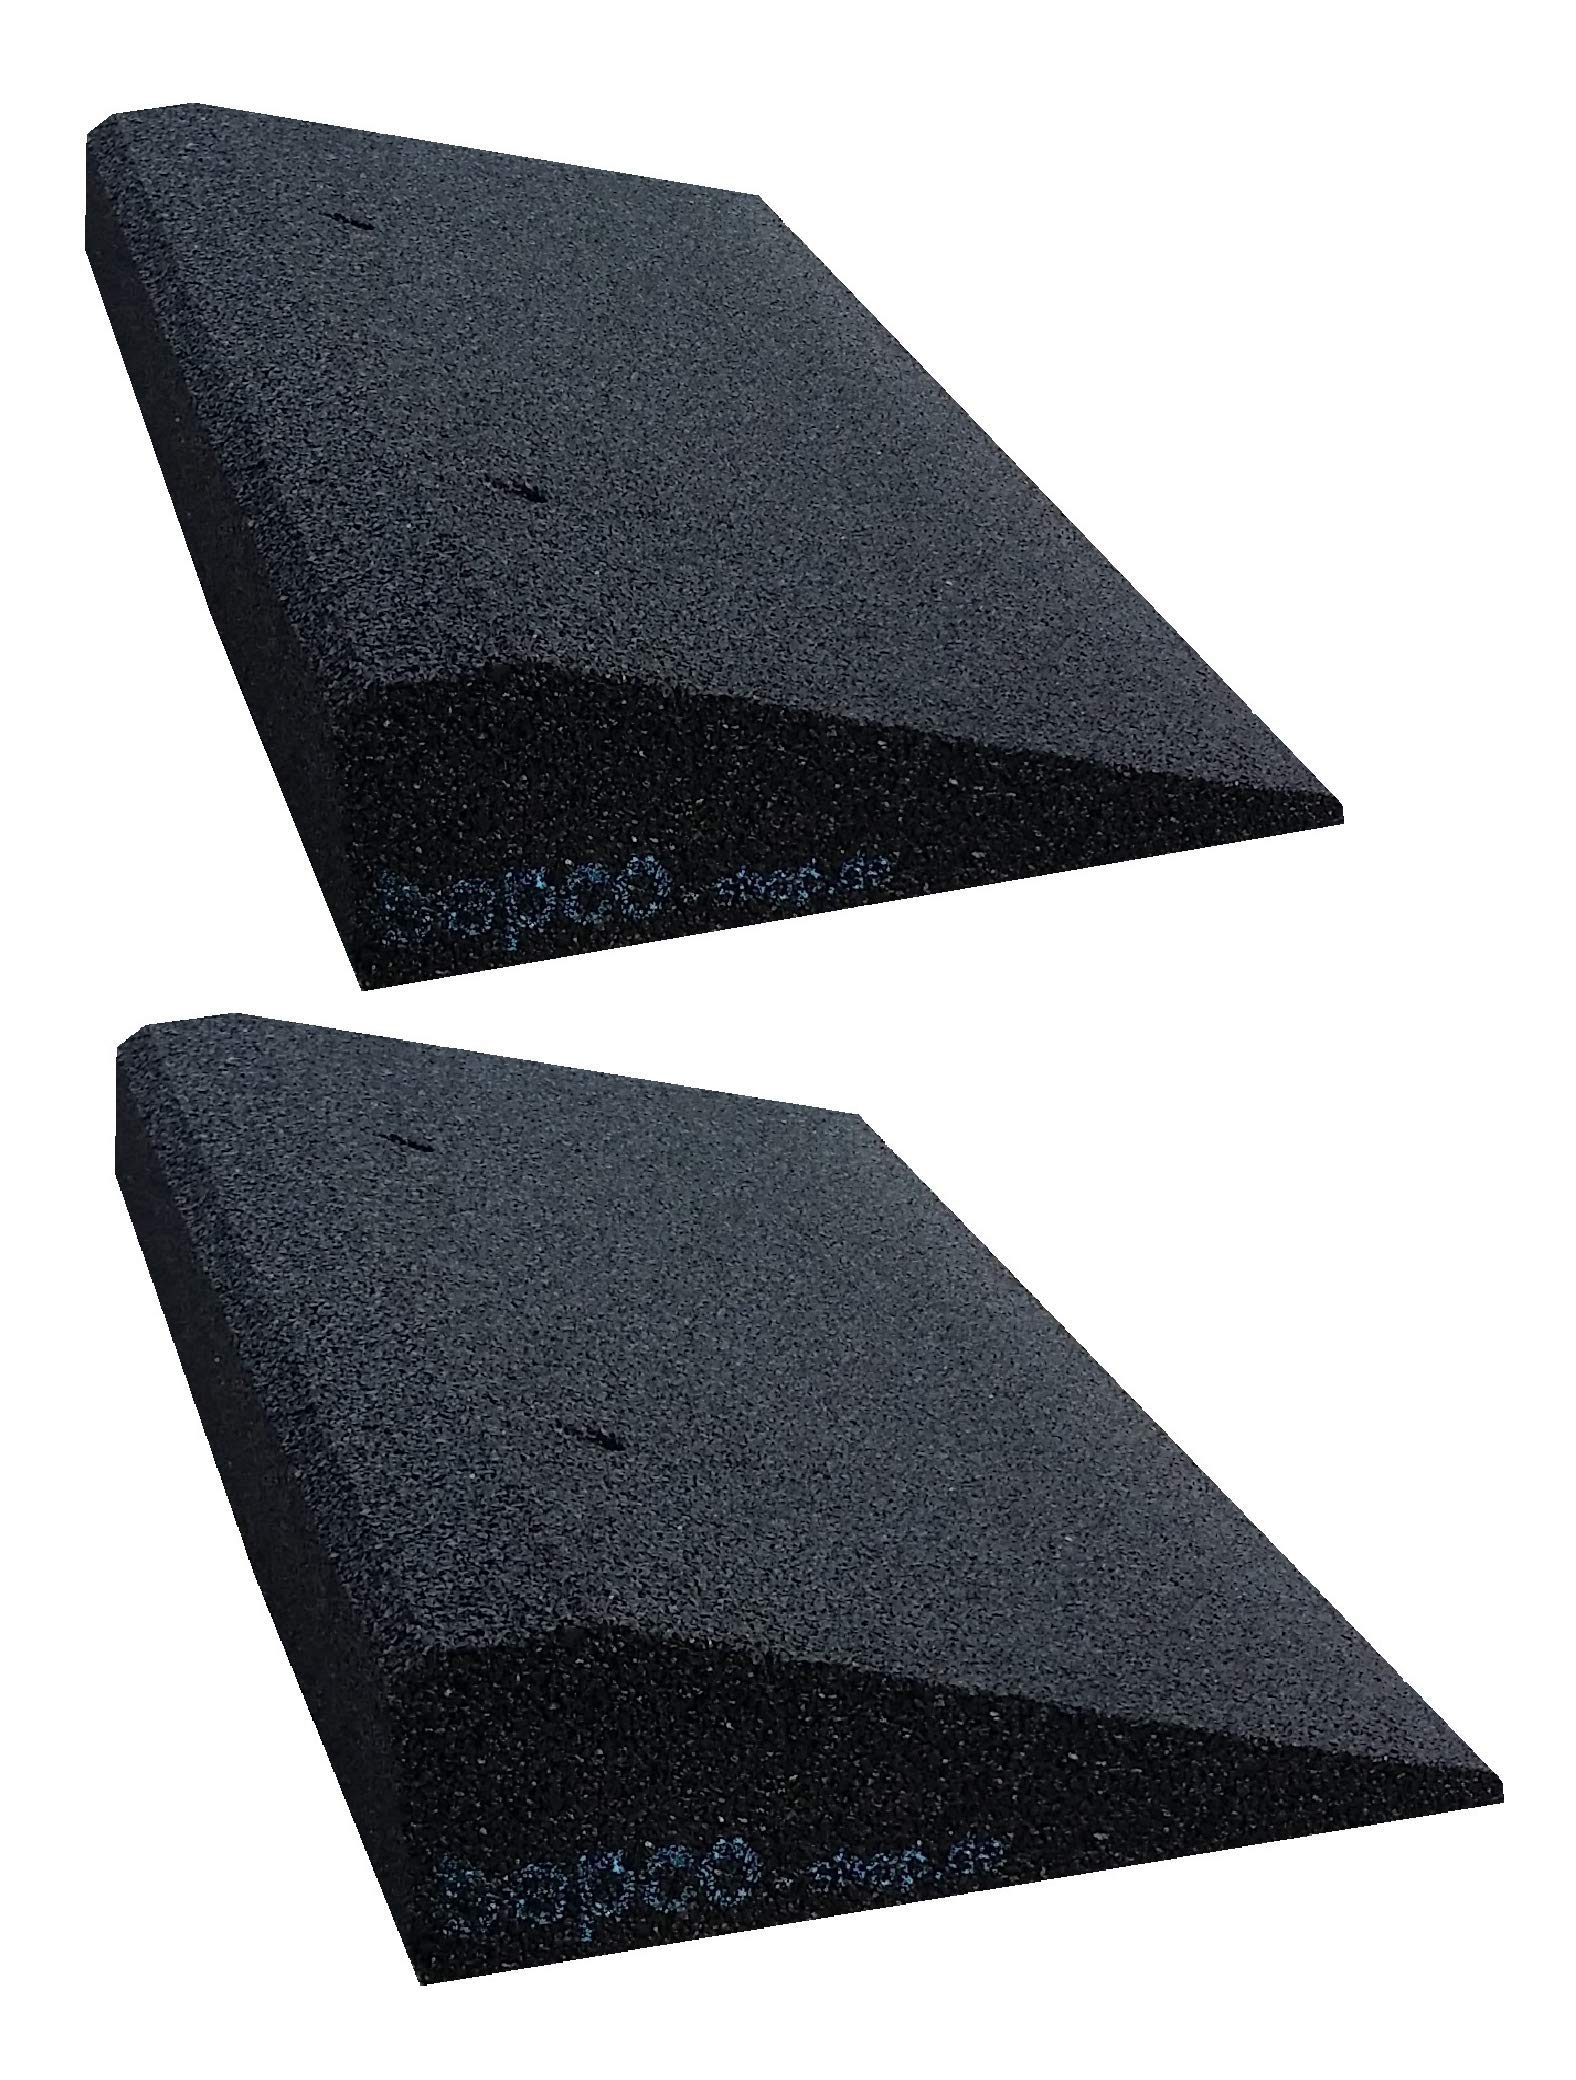 bepco Bordsteinkanten-Rampe-Set (2 Stück) LxBxH: 50 x 25 x 8 cm aus Gummi (schwarz) Auffahrrampe,Türschwellenrampe, mit eingelagerten Unterlegscheiben zur Befestigung